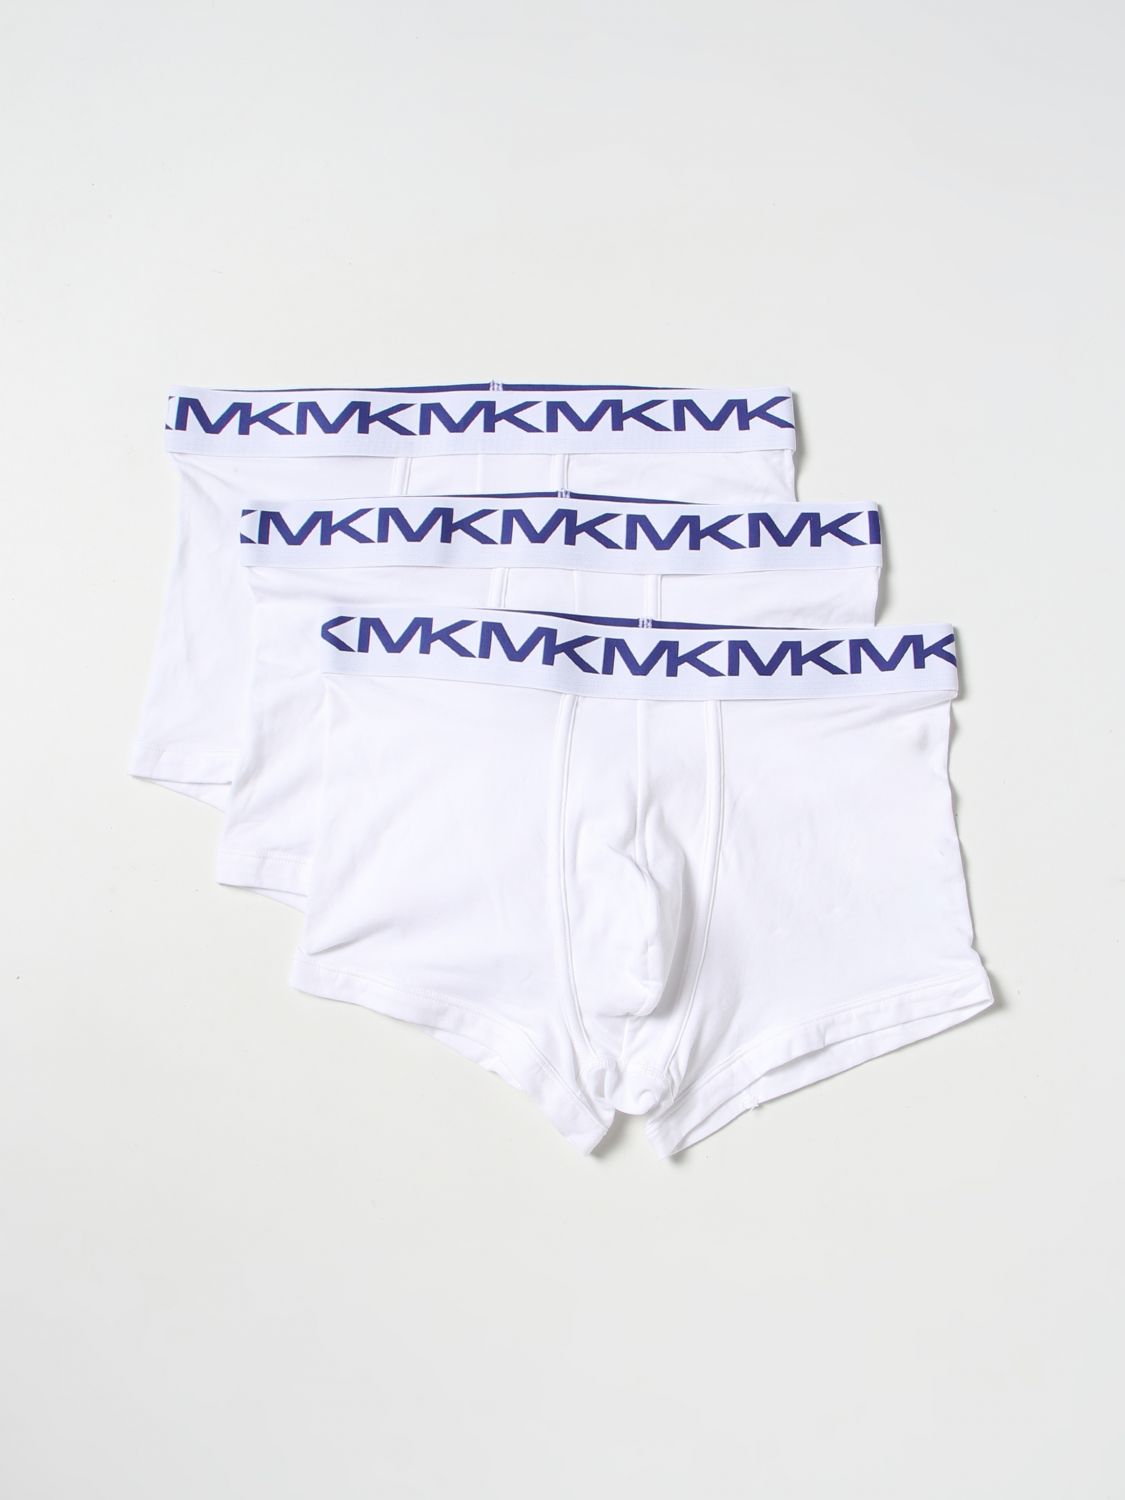 Michael Kors Underwear Men Color White